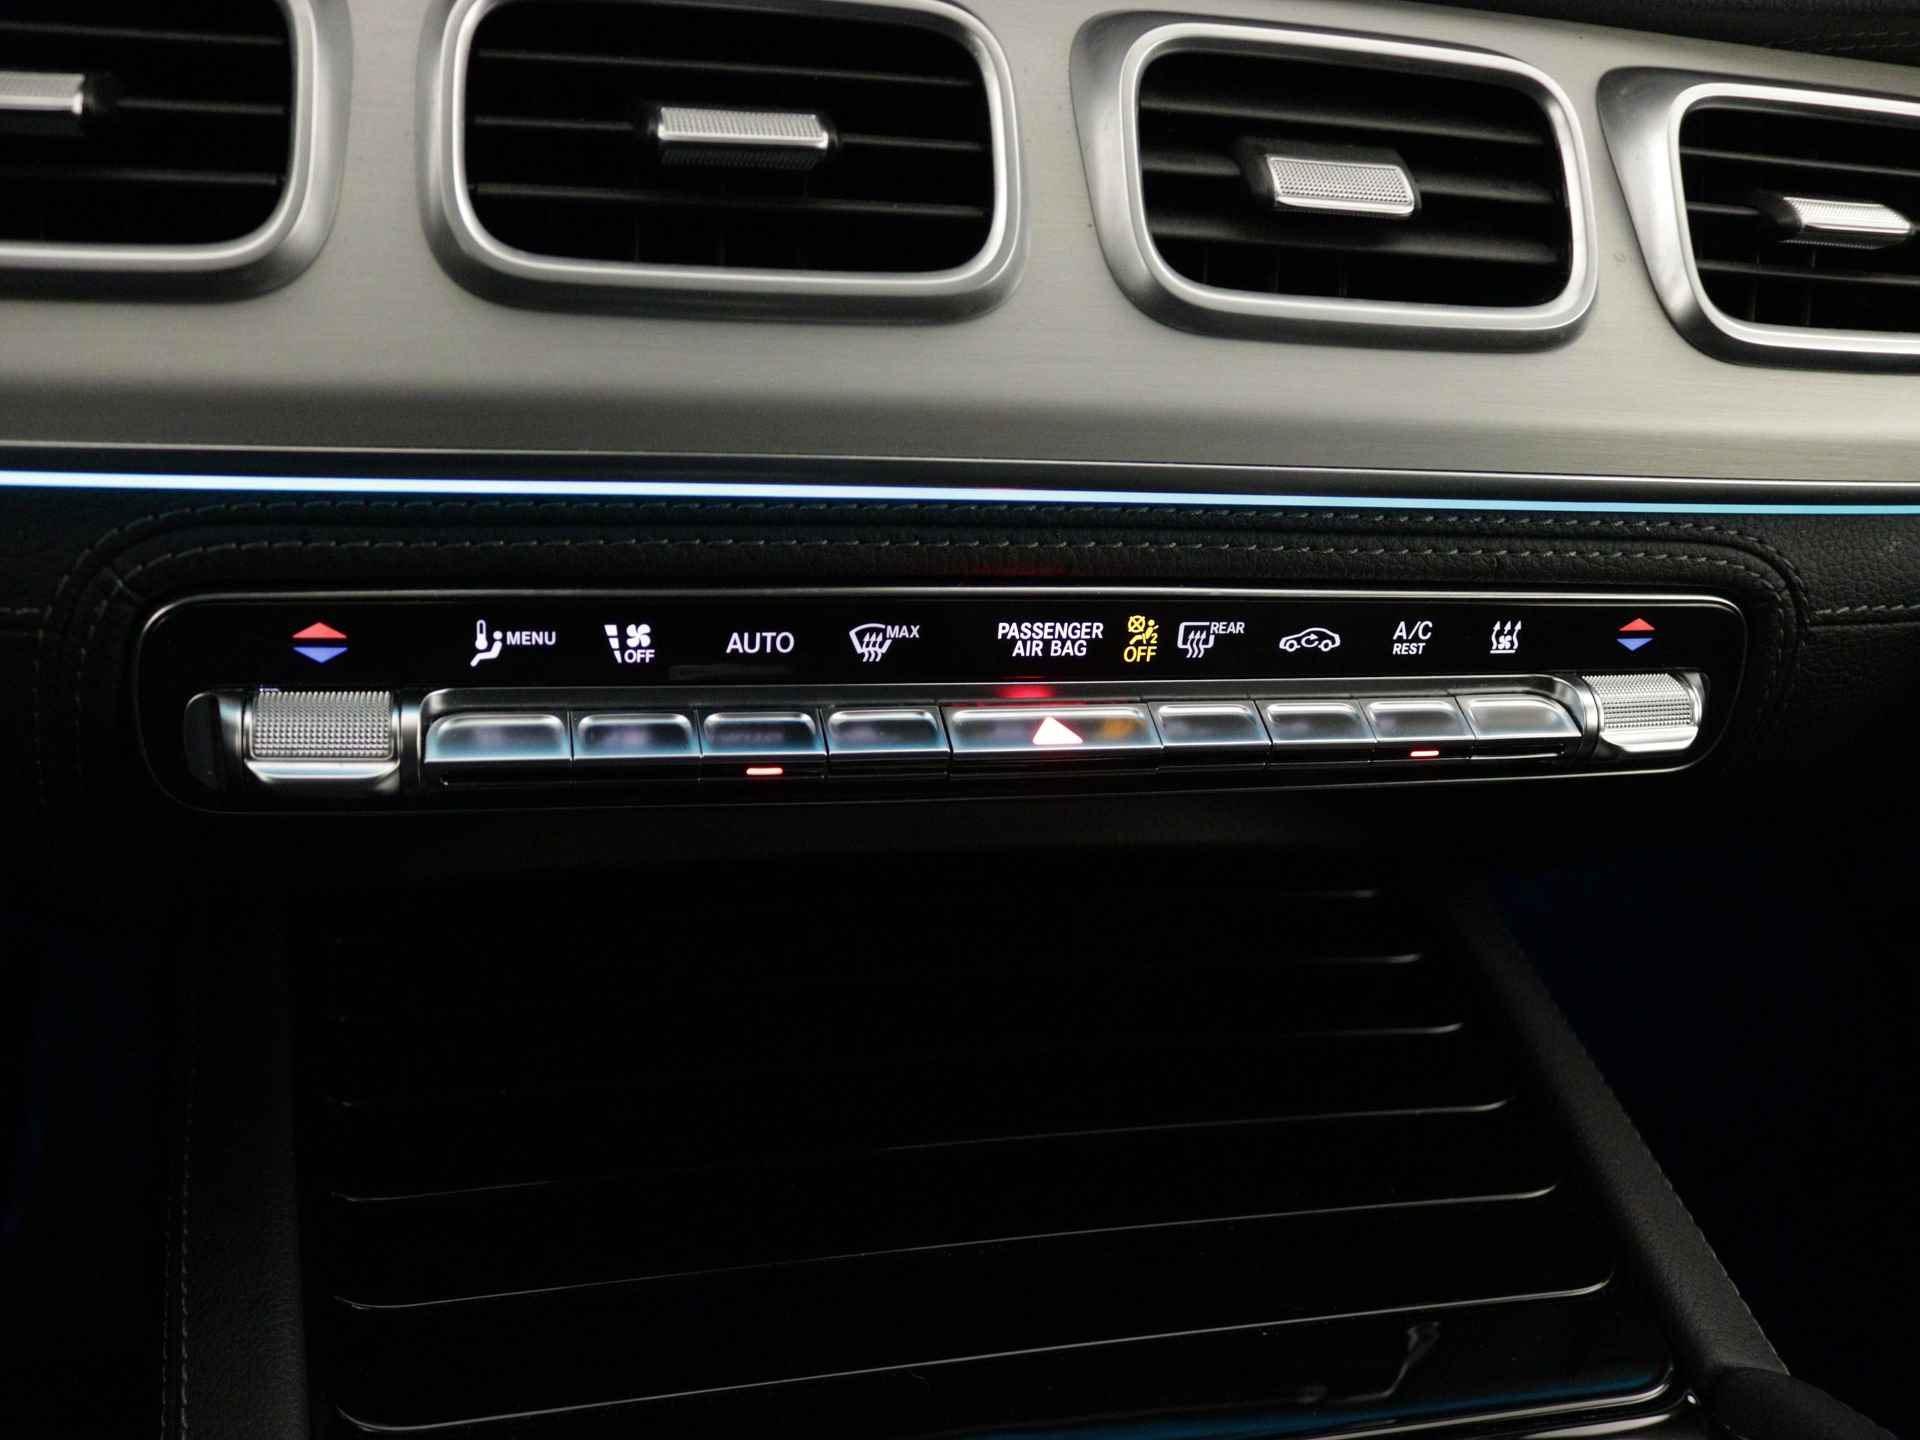 Mercedes-Benz GLE 350 e 4-MATIC AMG Nightpakket Limited 5 spaaks lichtmetalen velgen | Trekhaak | Airmatic | Treeplanken | Alarm klasse 3 |  Augmented Reality | sfeerverlichting | DAB | Parking support | inclusief 24 maanden MB Certified garantie voor europa - 12/45